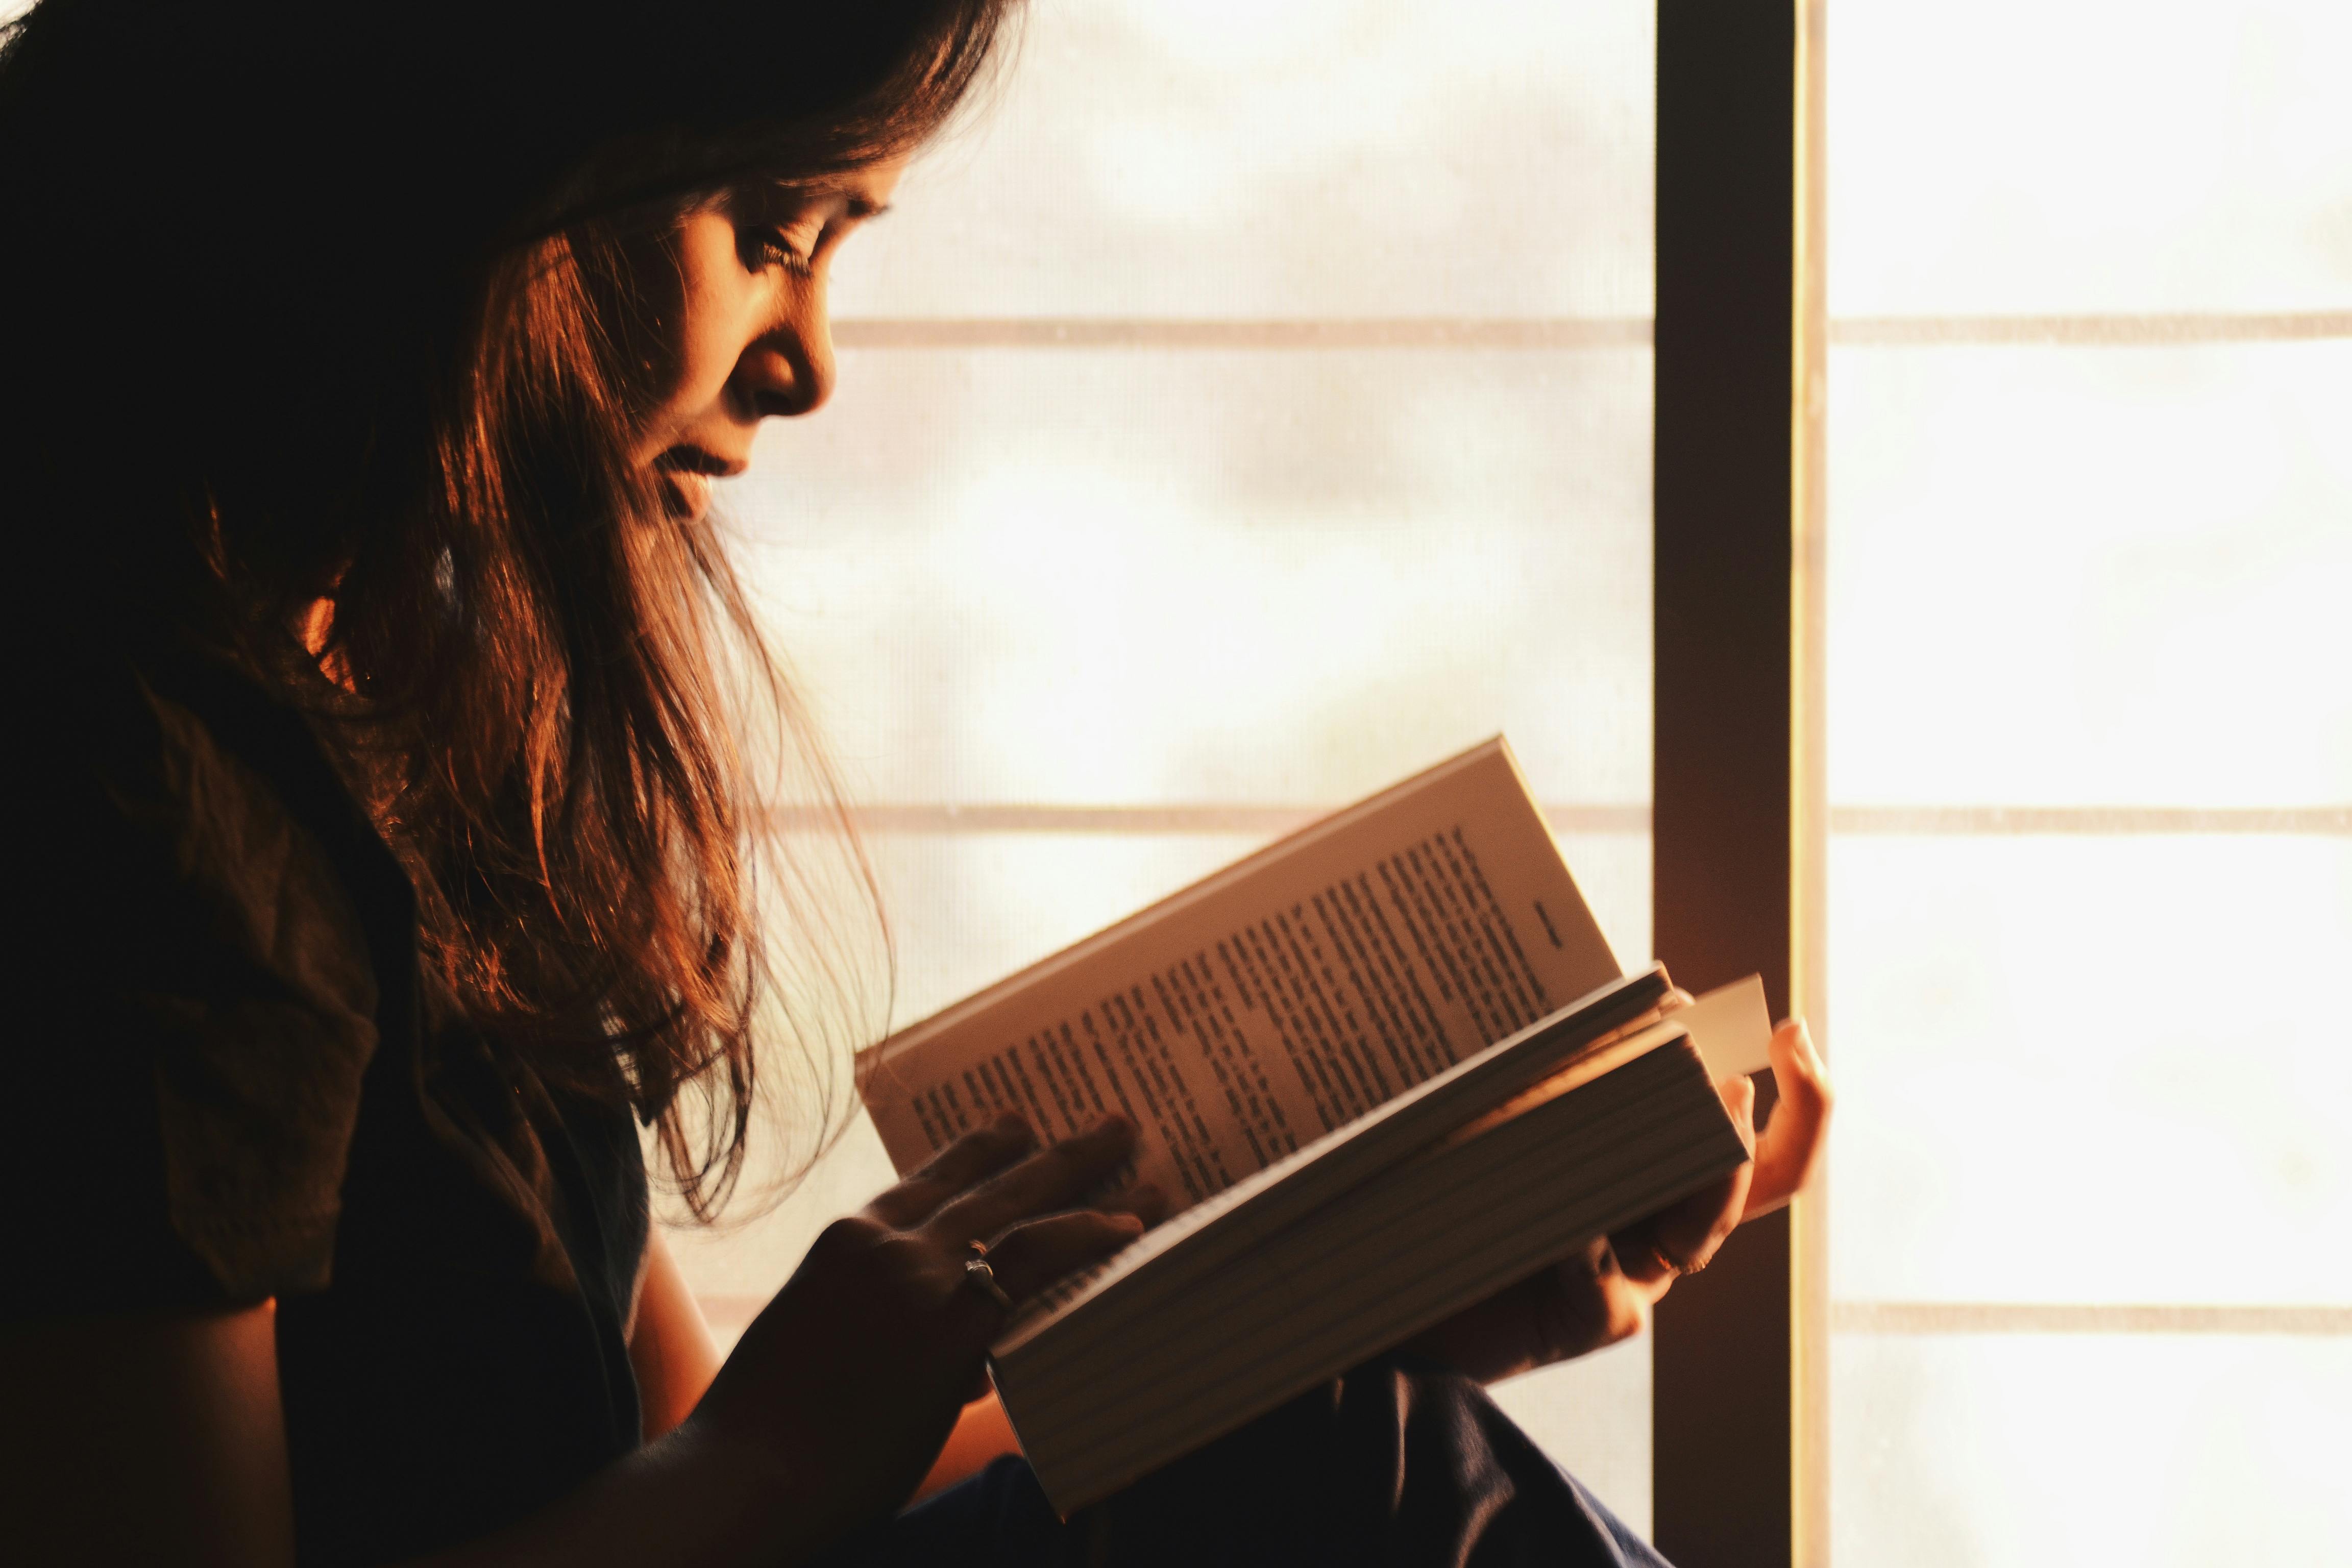 Eine junge Frau liest ein Buch | Quelle: Rahul Shah auf Pexels